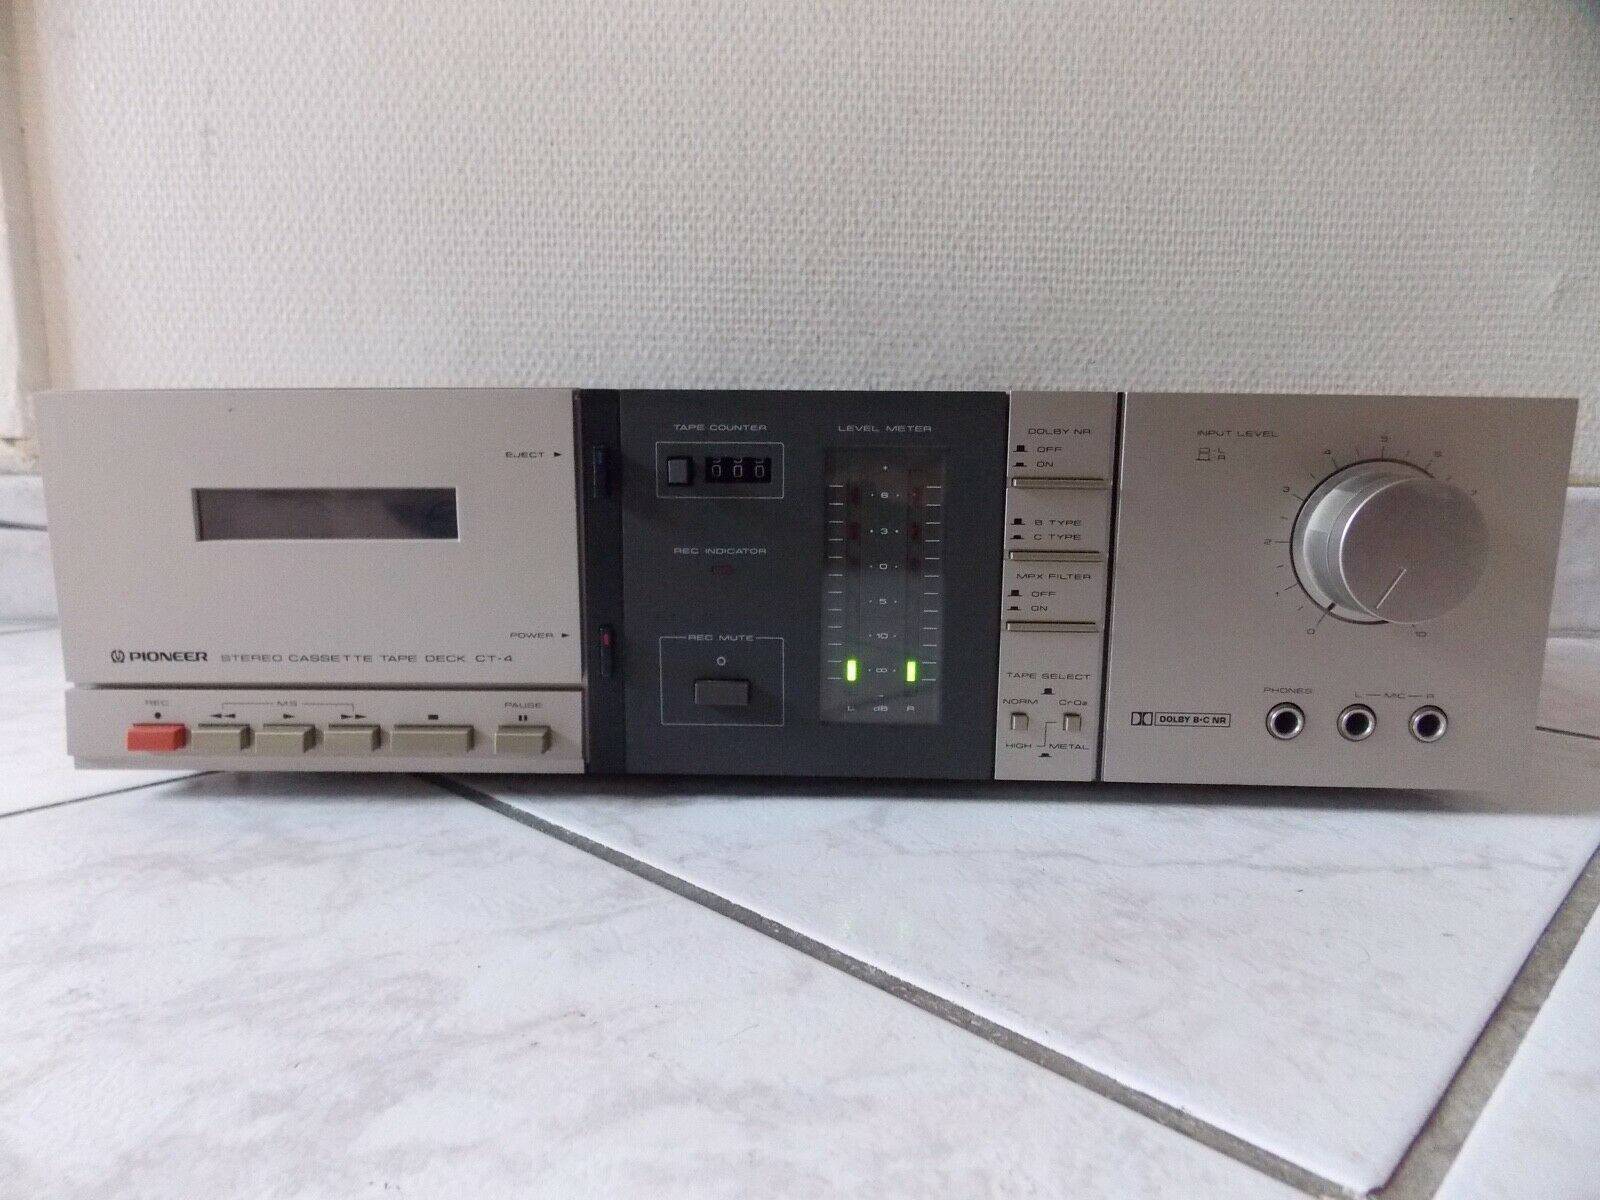 lecteur cassette pioneer ct-4 vintage tape deck